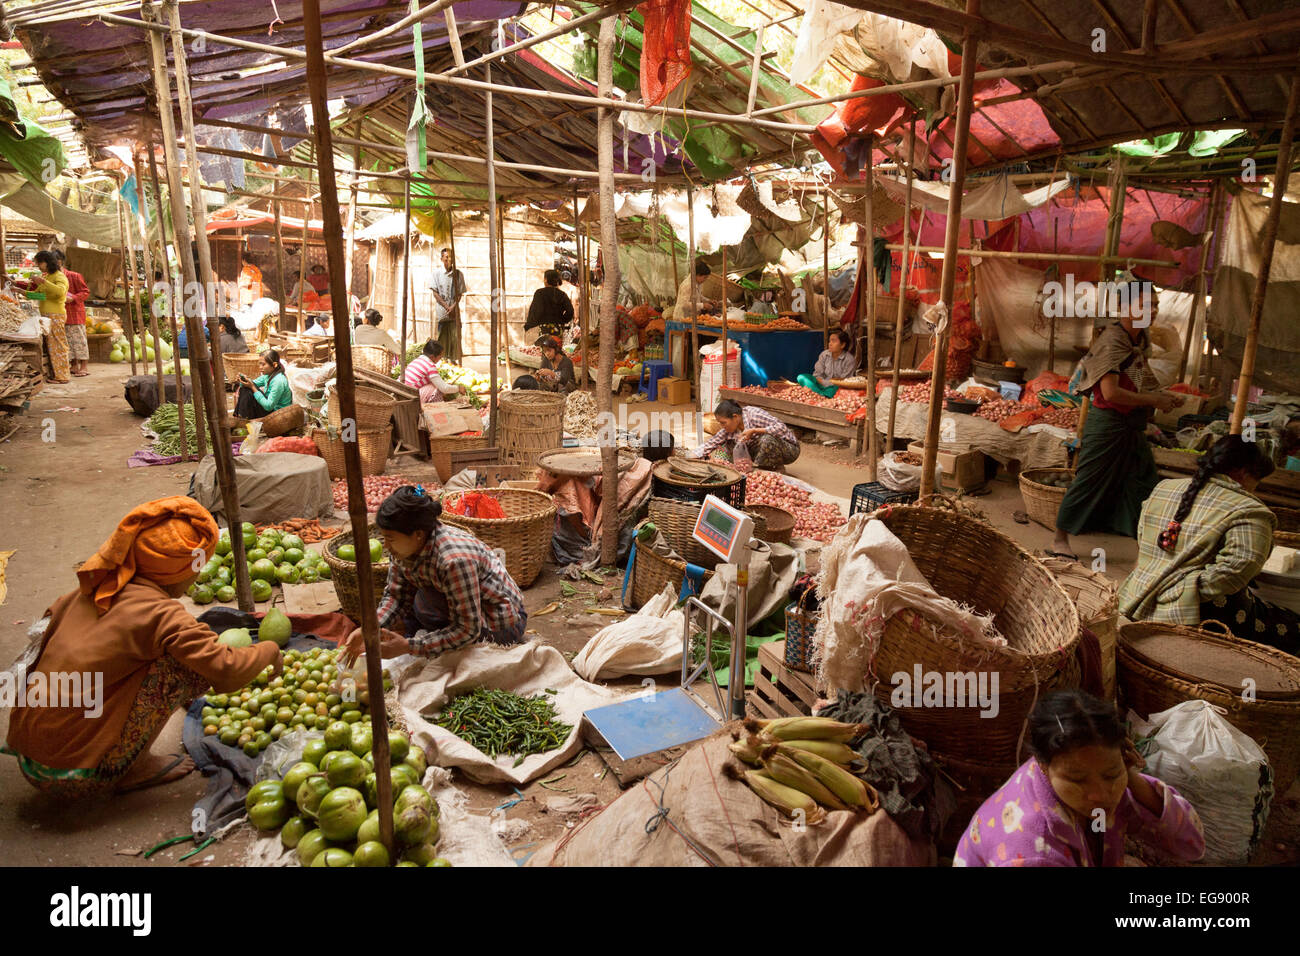 Village market scene, Mani Sithu Market in Nyaung-U village, Bagan